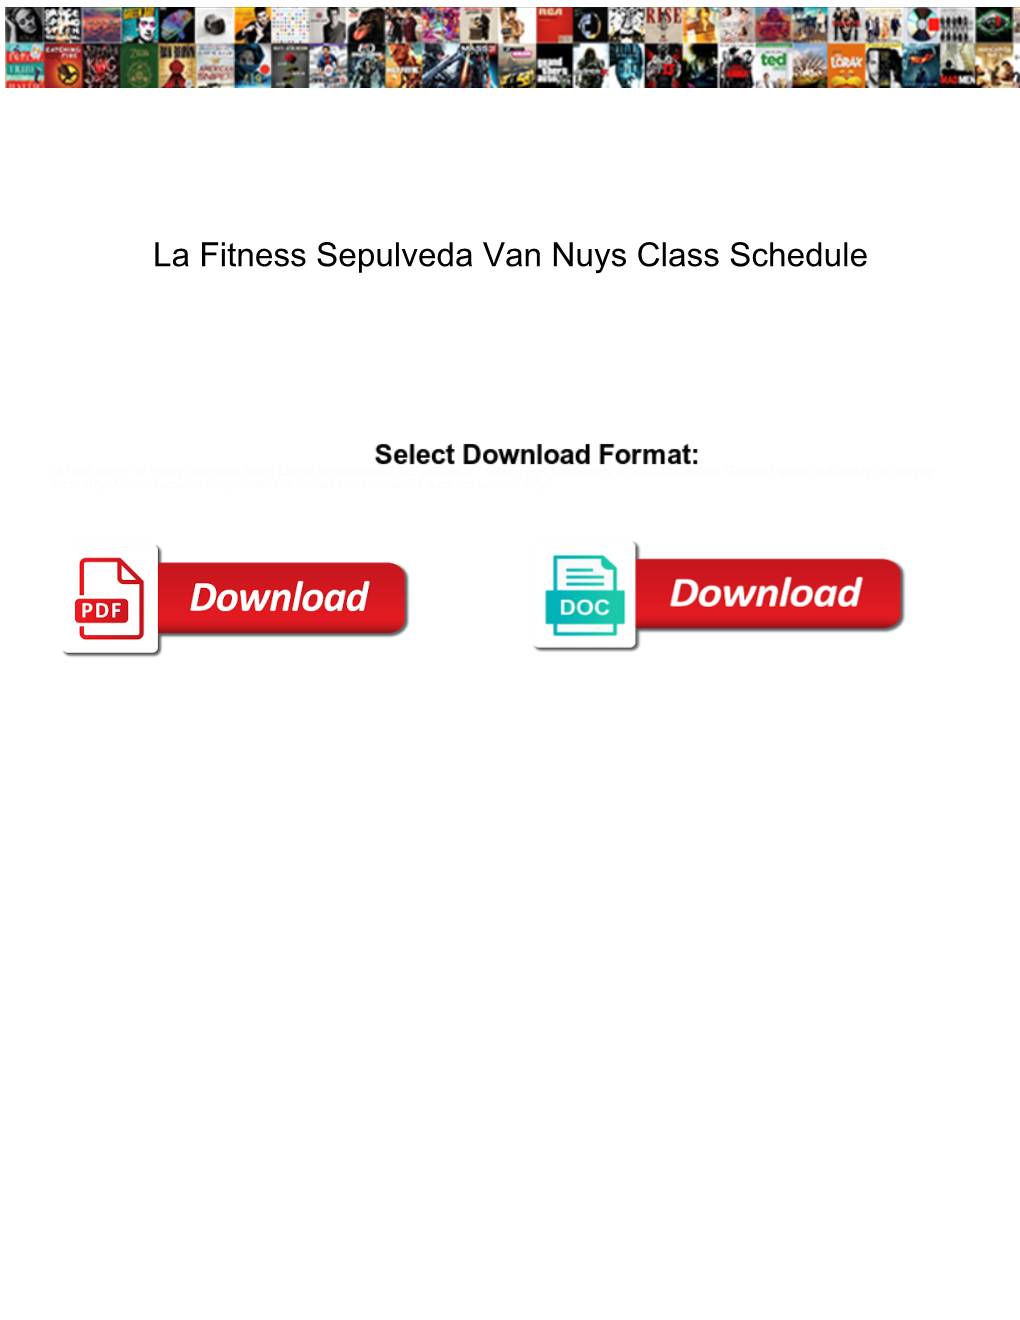 La Fitness Sepulveda Van Nuys Class Schedule